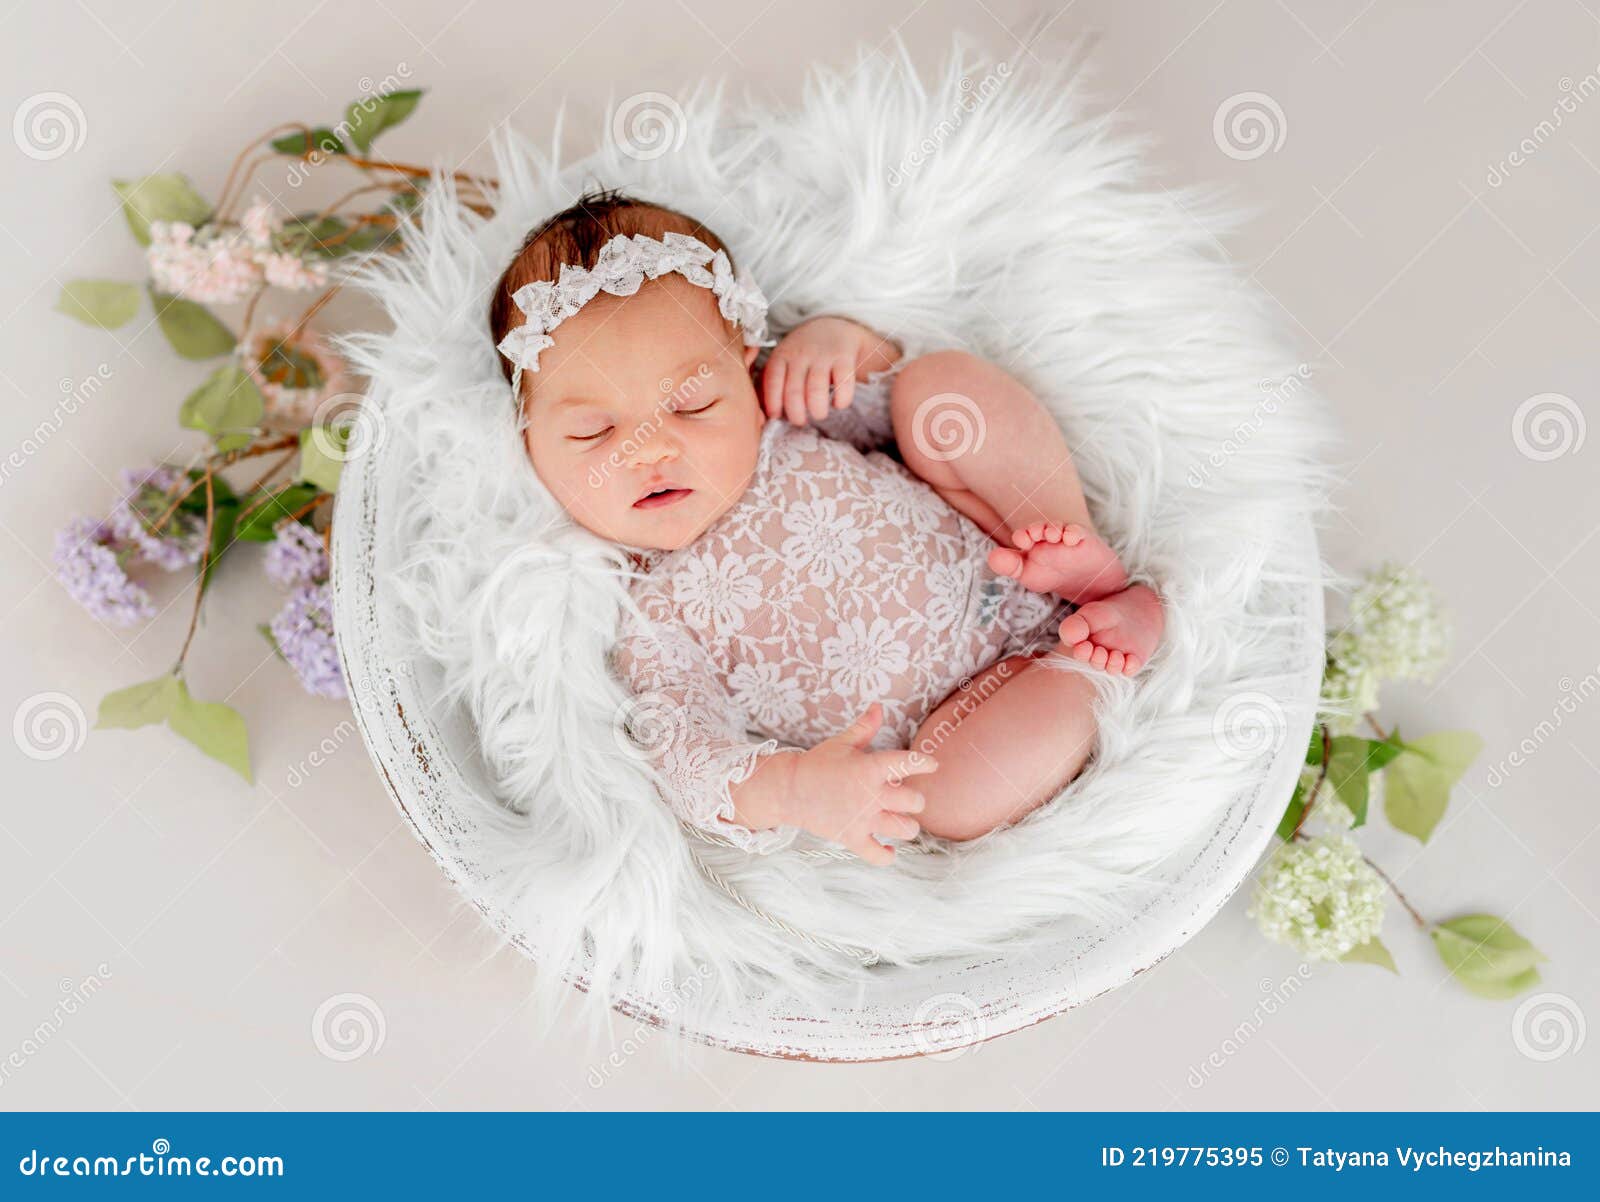 Sesión de fotos de niña recién nacida